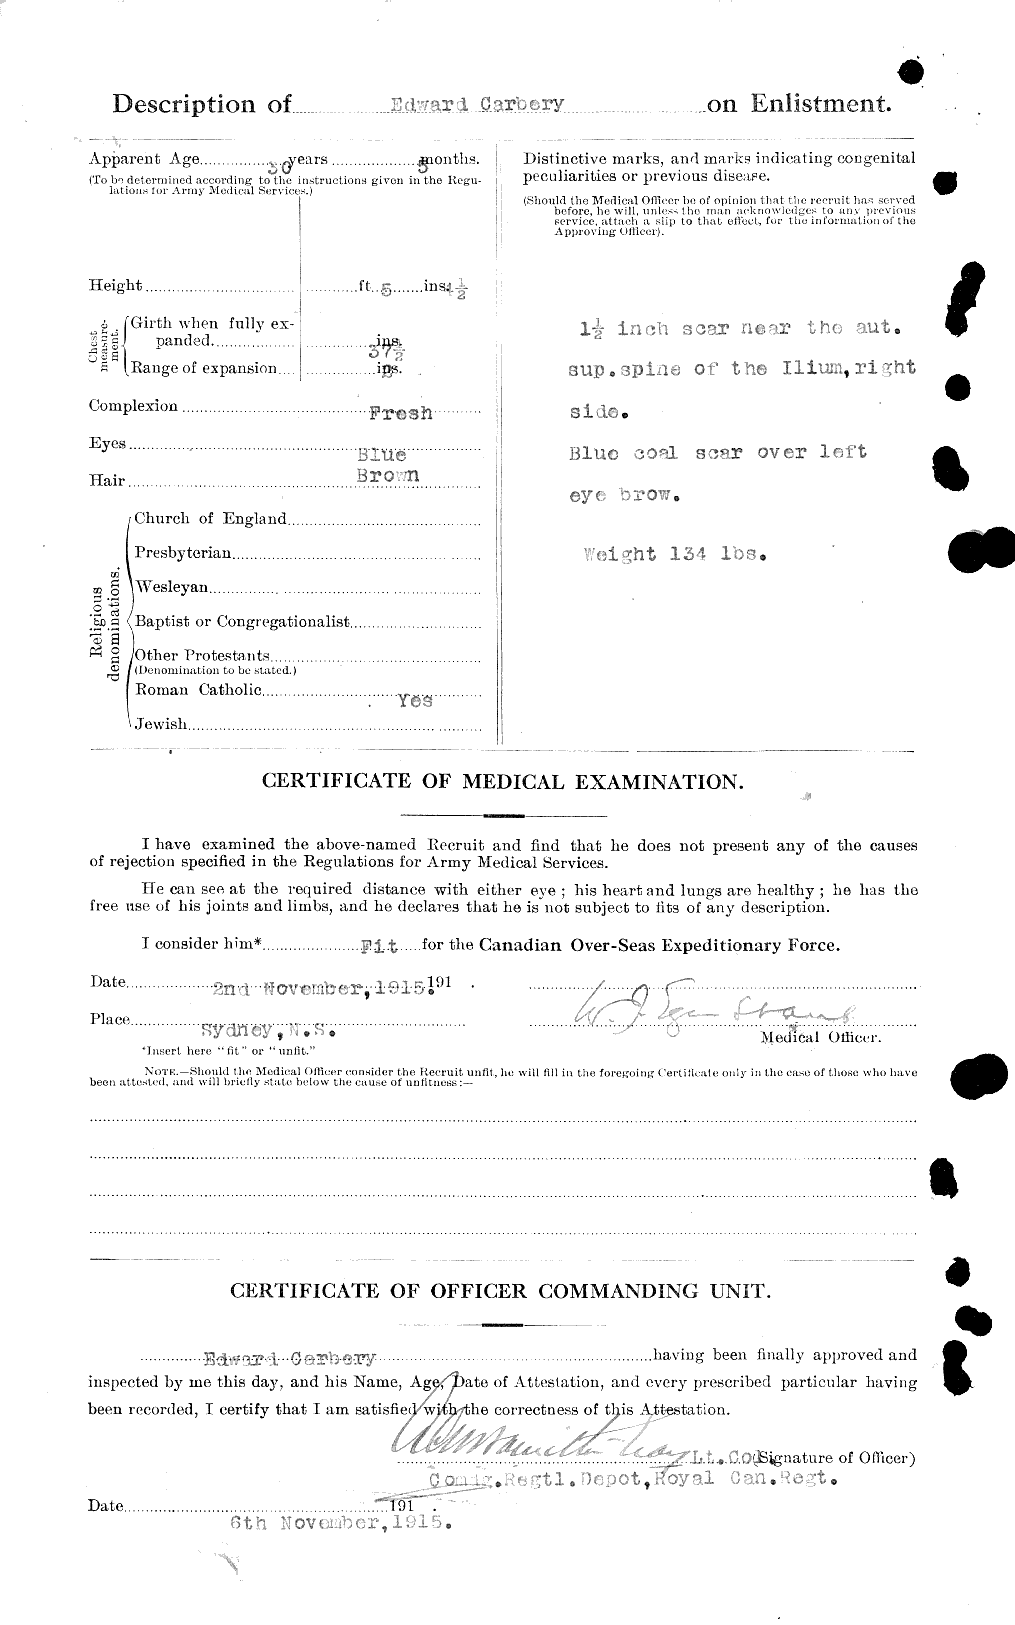 Dossiers du Personnel de la Première Guerre mondiale - CEC 009208b